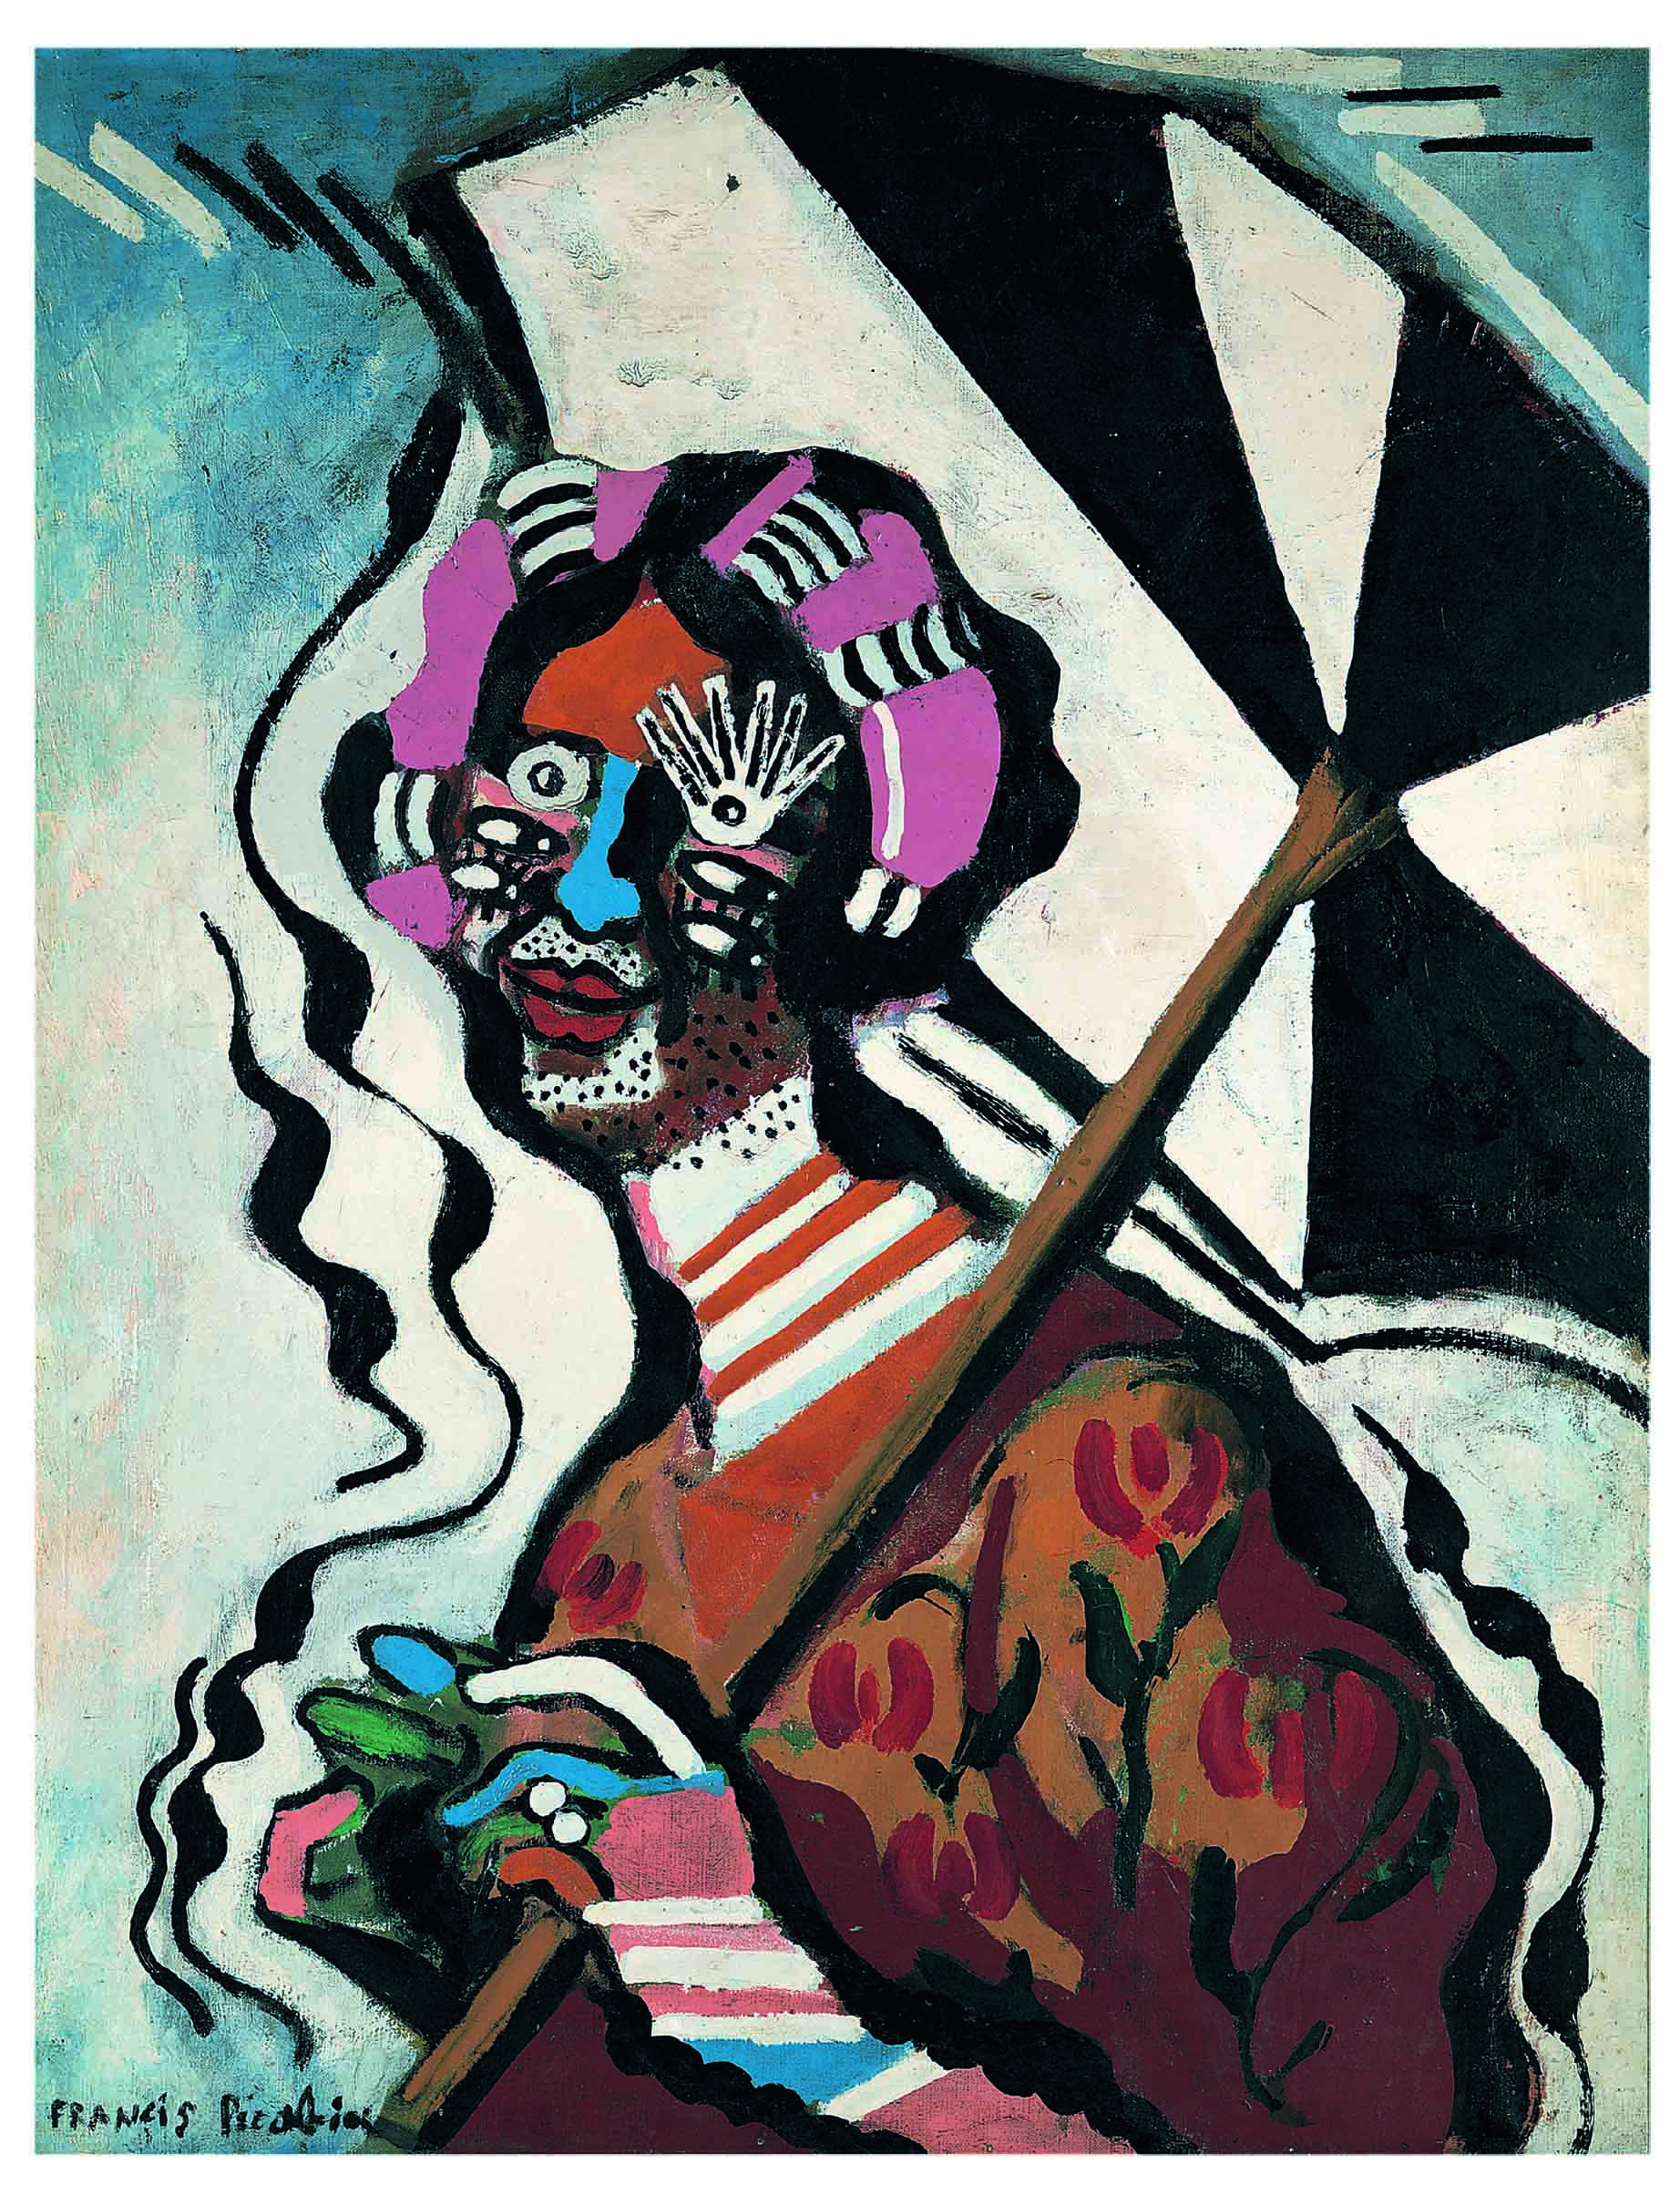 Picasso y Picabia se vuelven a encontrar en Barcelona